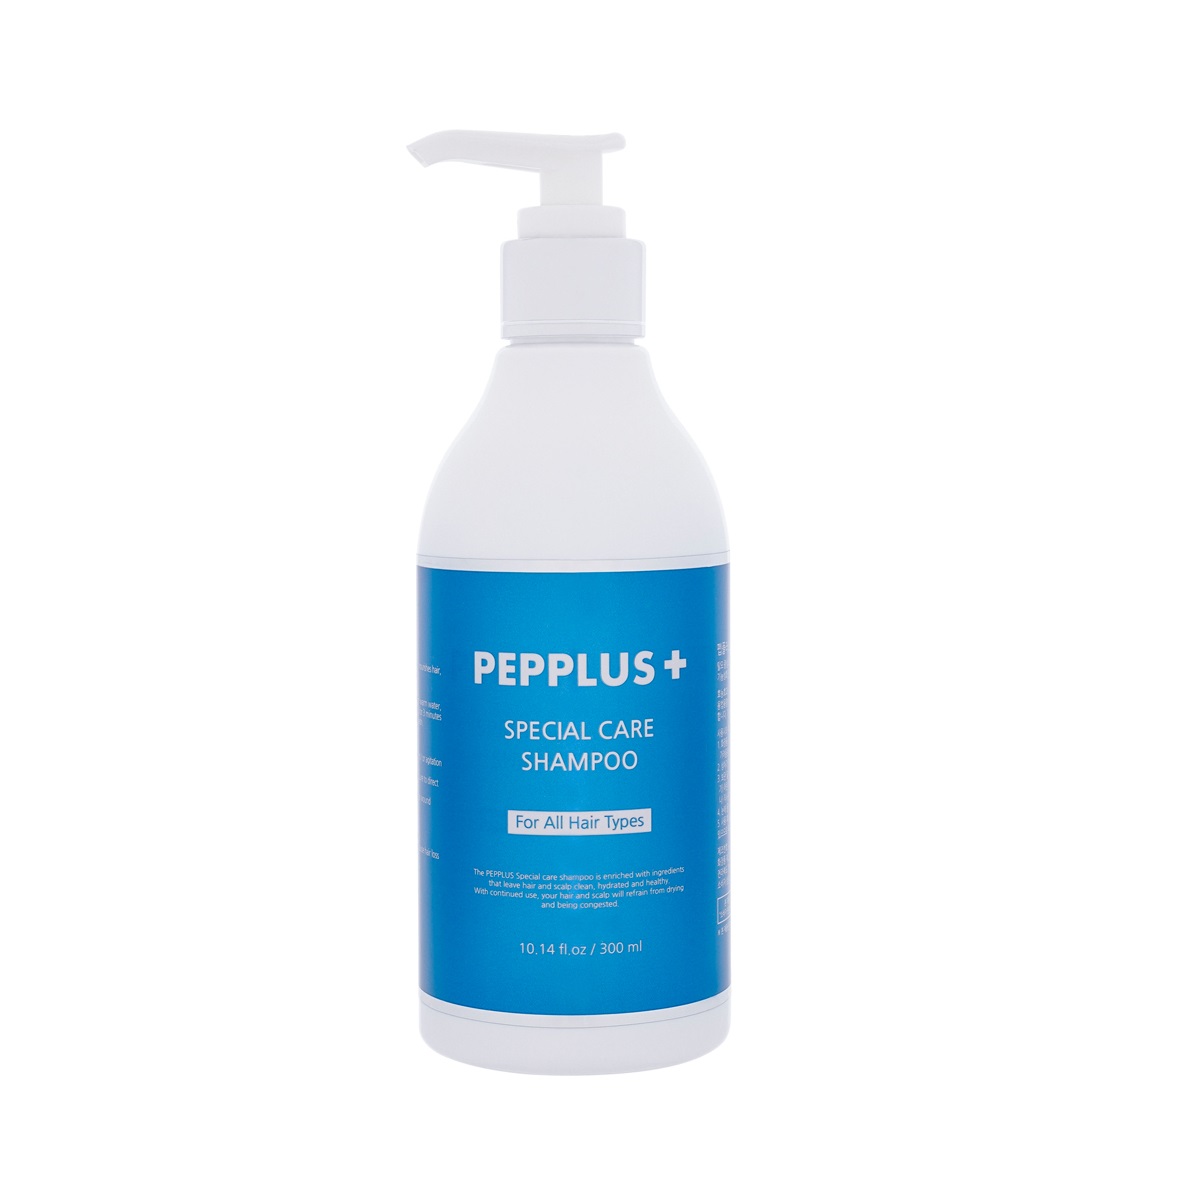 PEPPLUS Special Care Shampoo